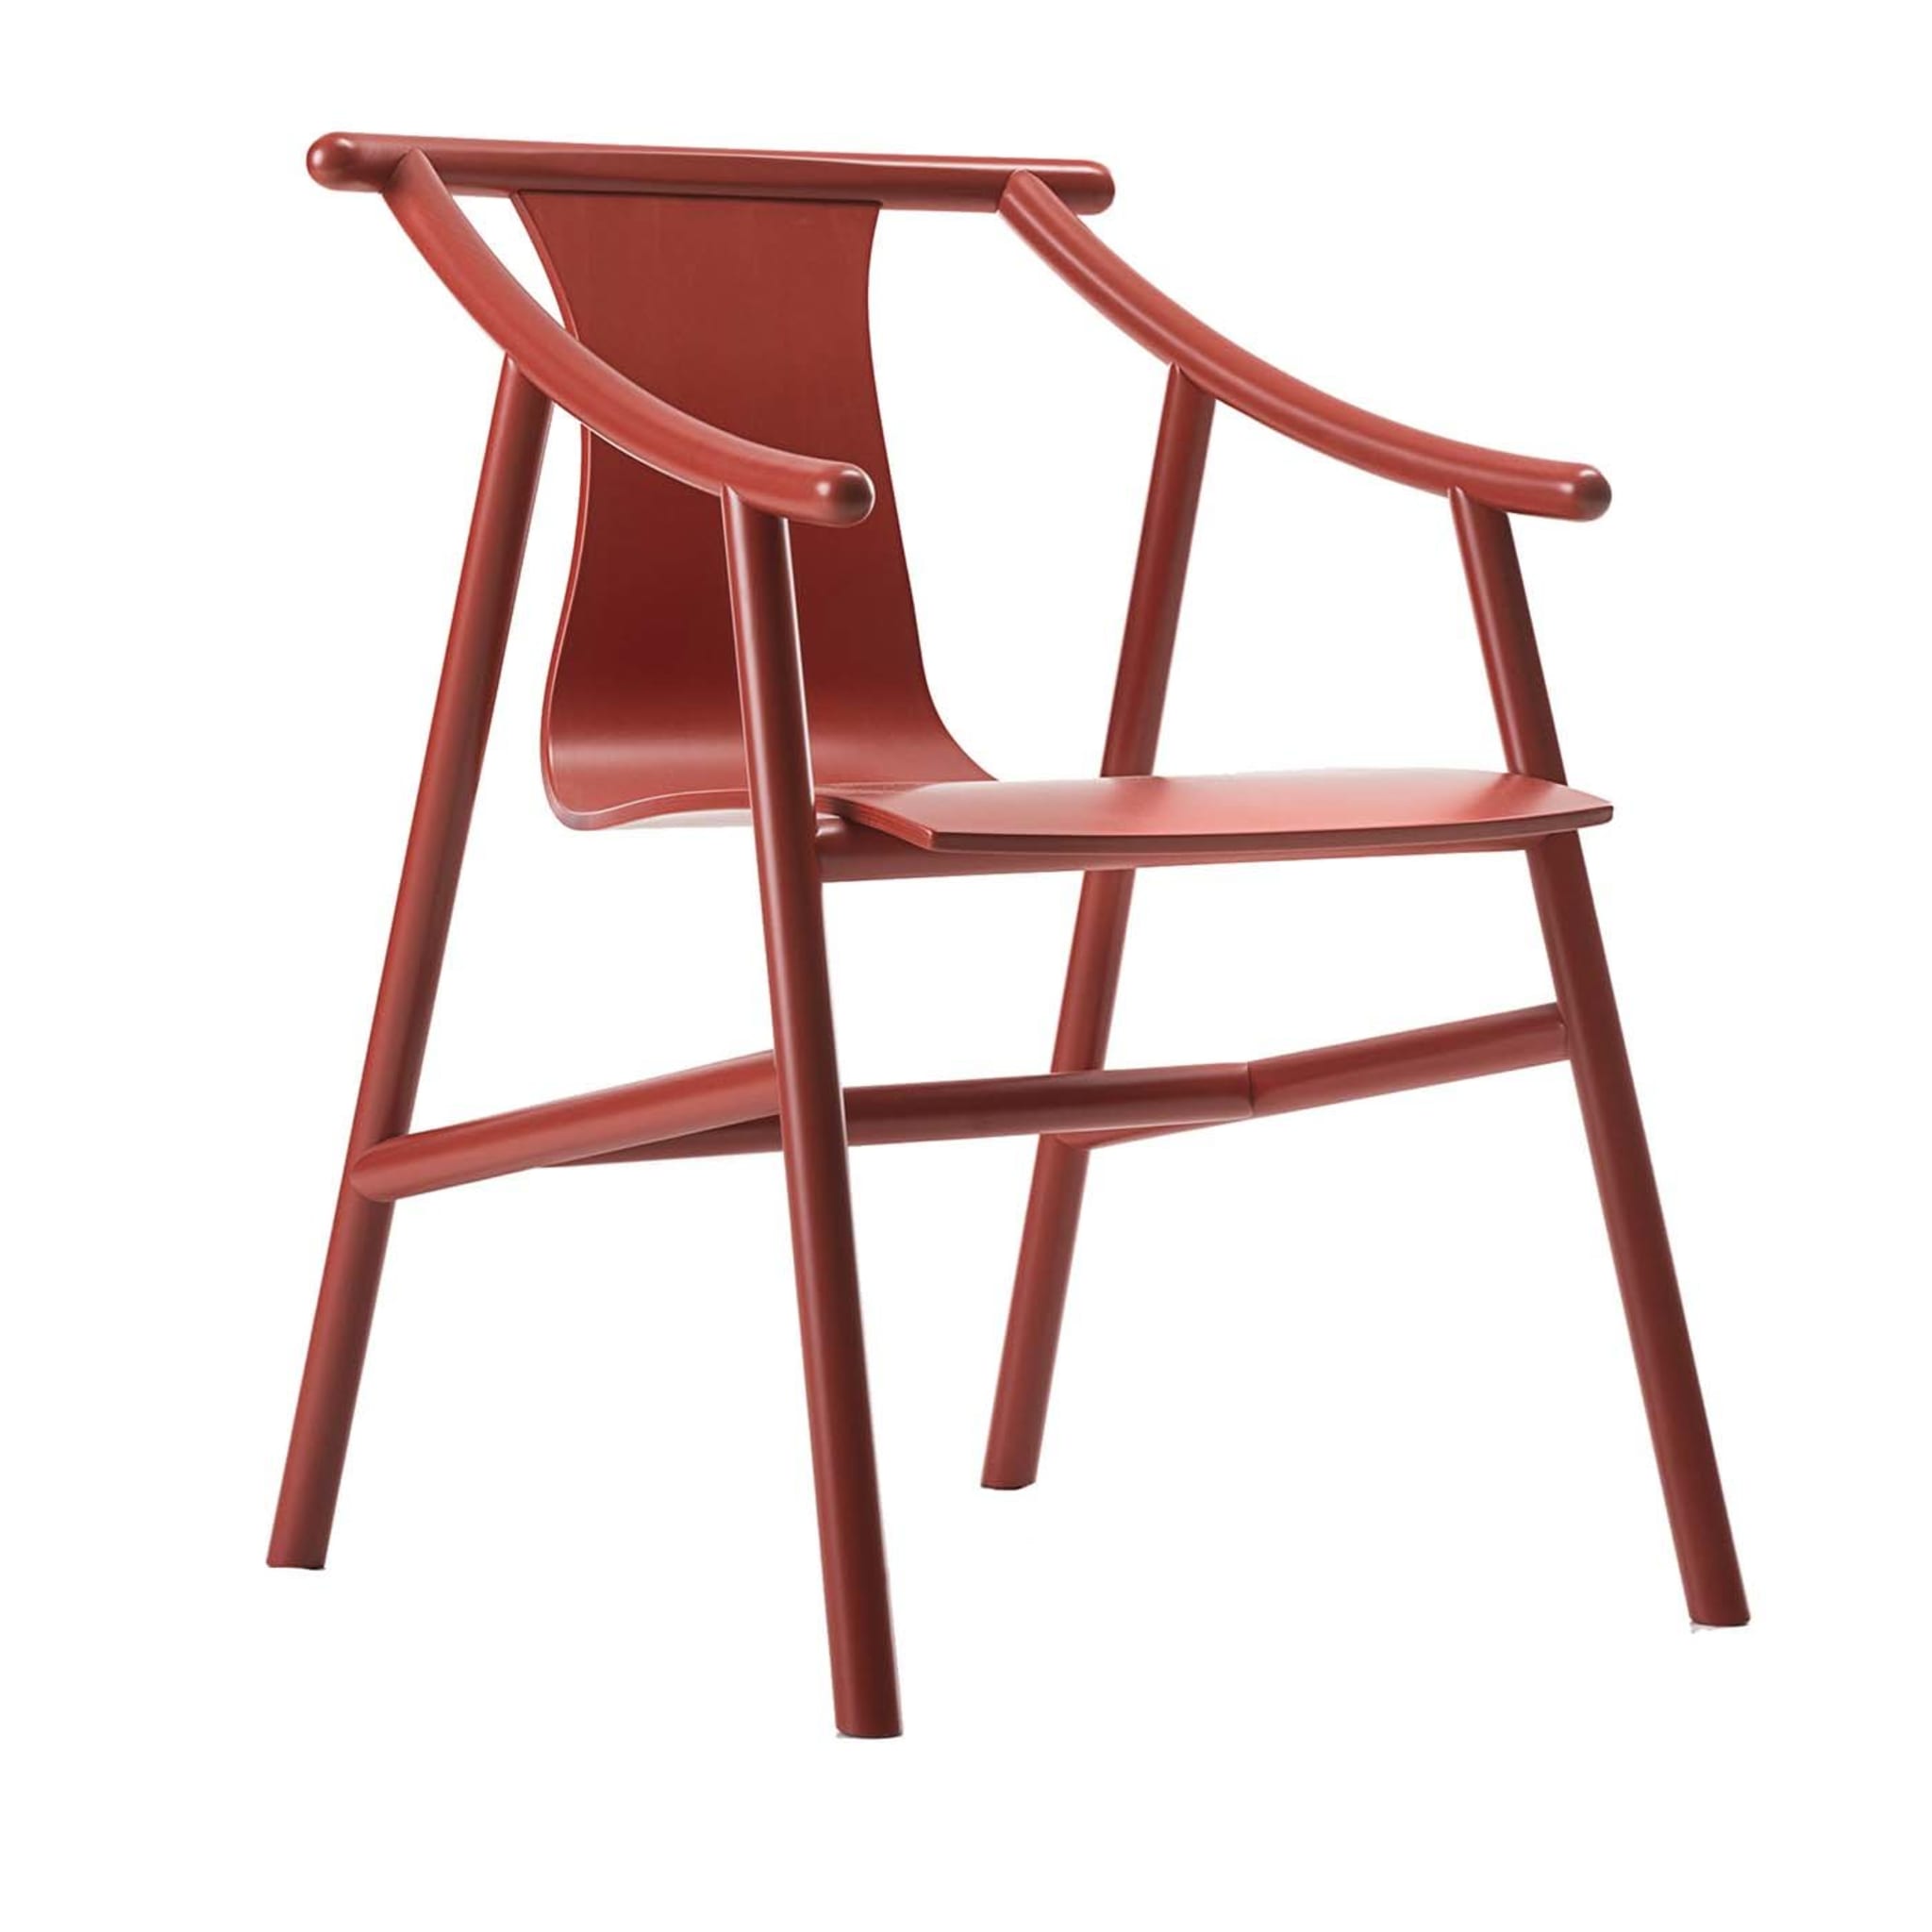 Magistretti 03 01 Roter Stuhl von Vico Magistretti - Hauptansicht